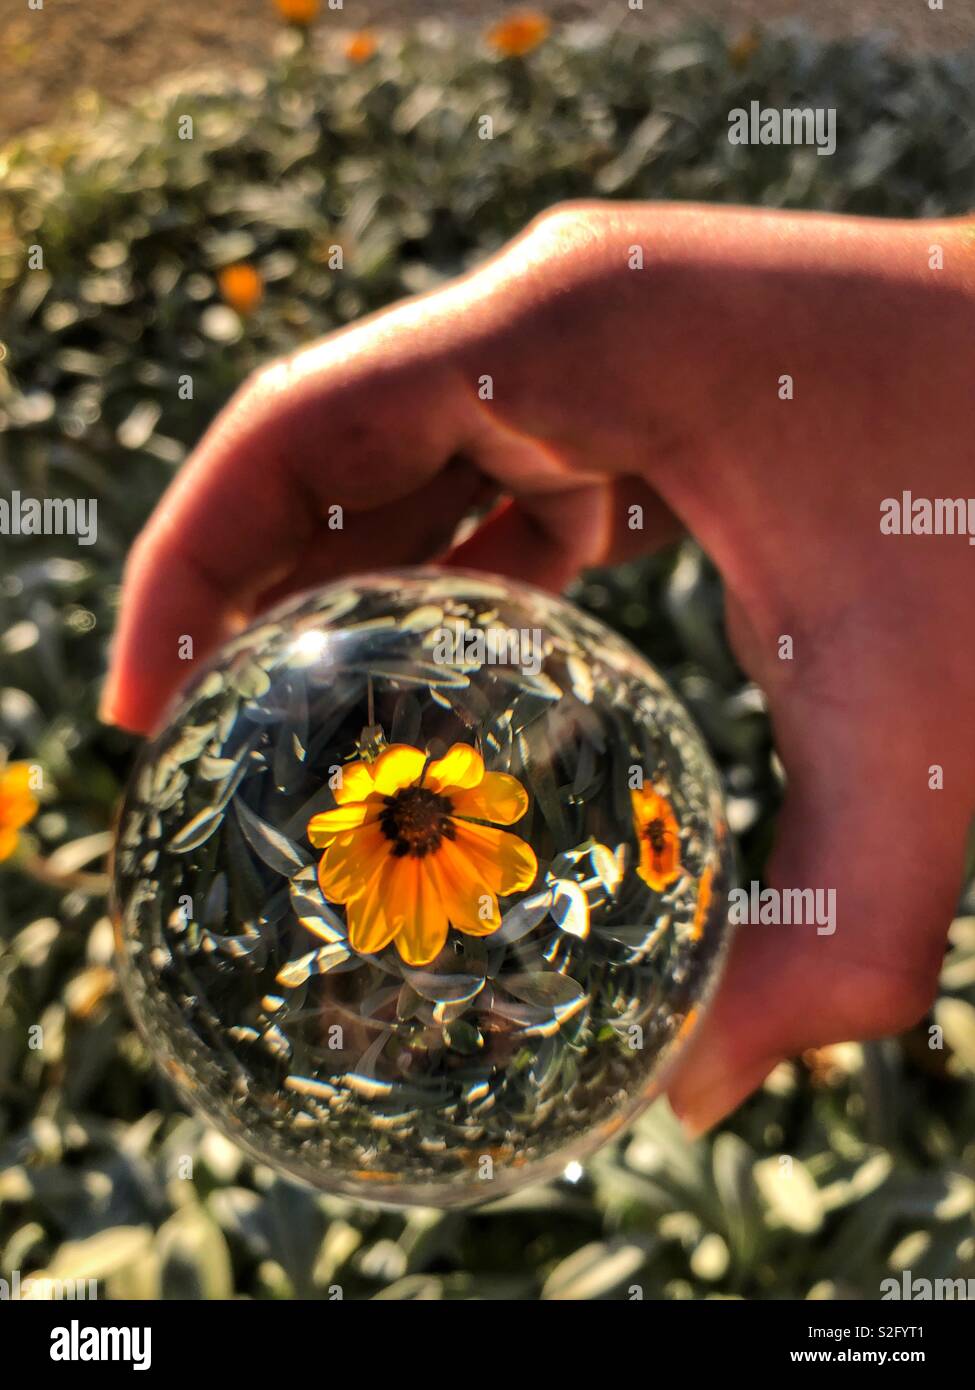 Crystal Ball in der Hand, über einen Patch von gazania Blumen. Kreative Fotografie, crystal ball Brechungsindex. Stockfoto